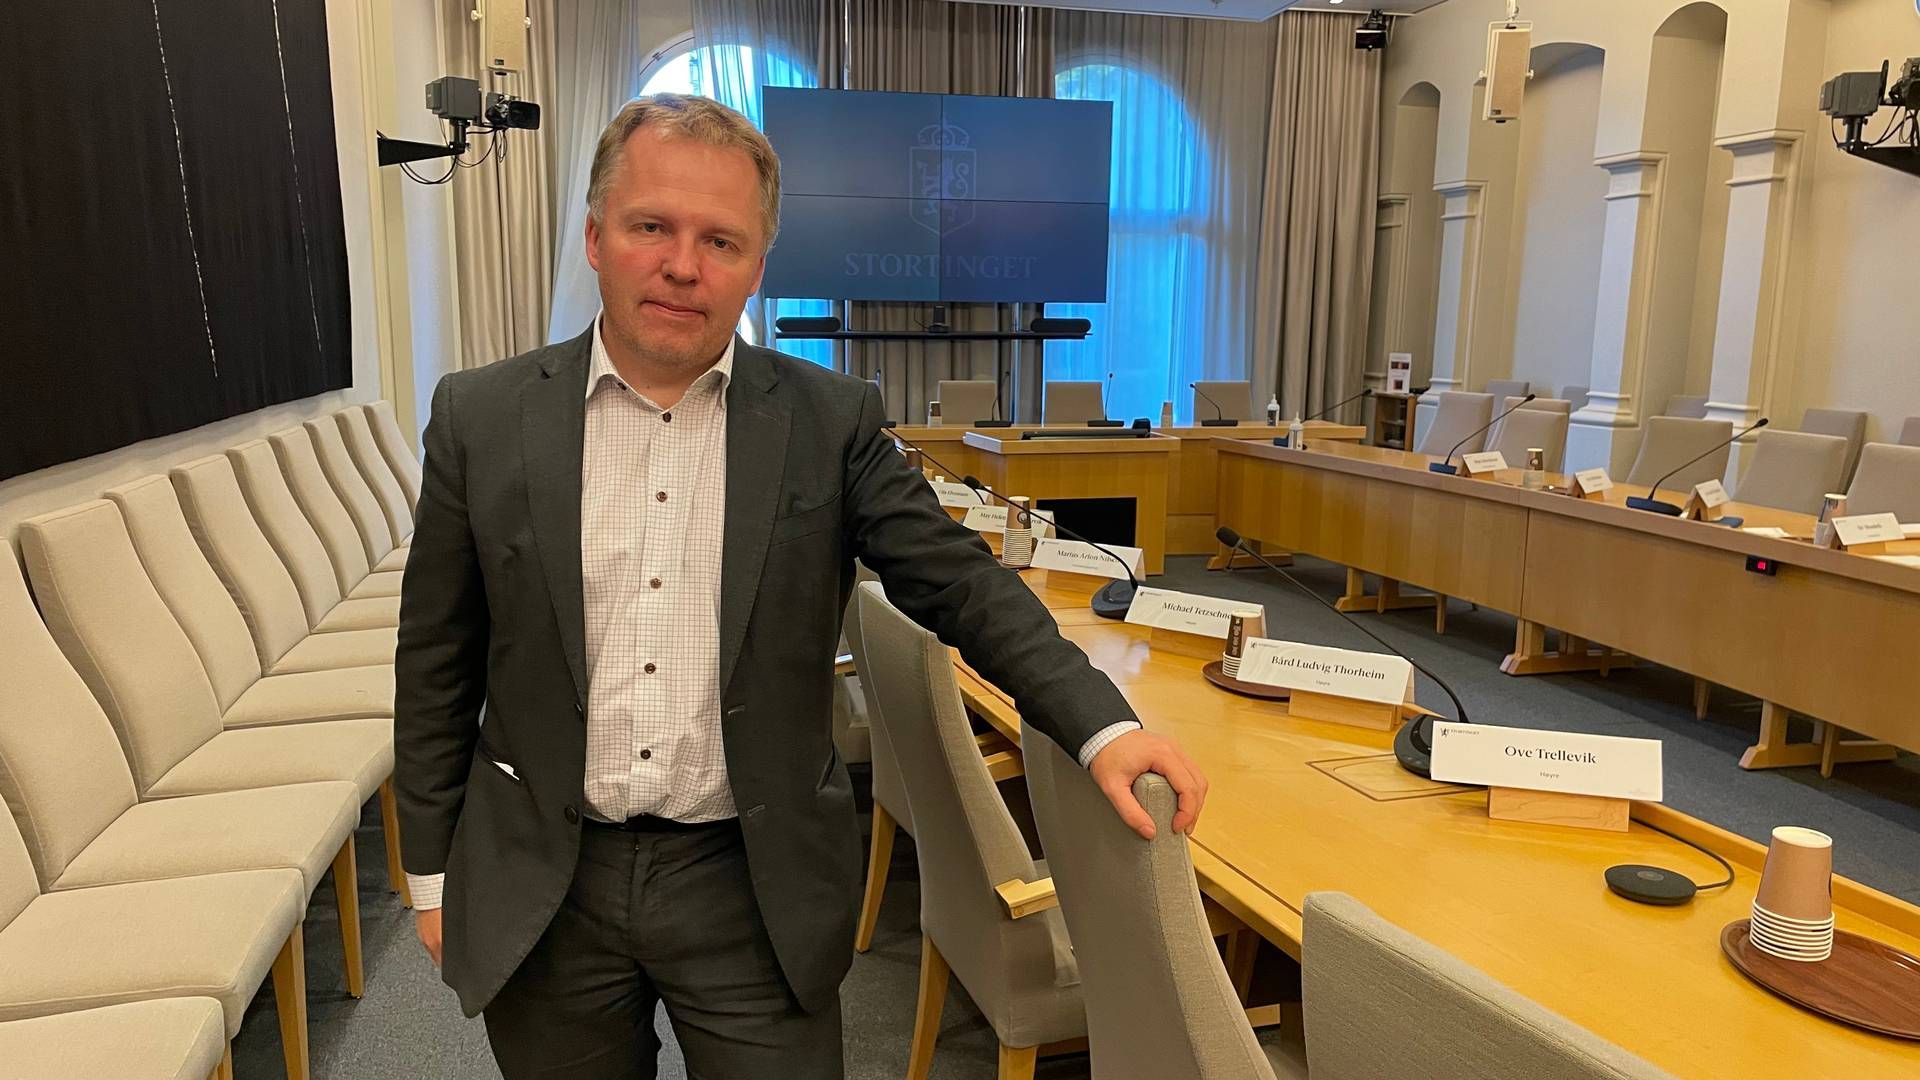 RAPPORT-STØTTE: Aneos Stig Tore Laugen mener den nye KPMG-rapporten får godt frem det han beskriver som uheldige effekter som innføring av en grunnrenteskatt vil ha. | Foto: Harald Amdal